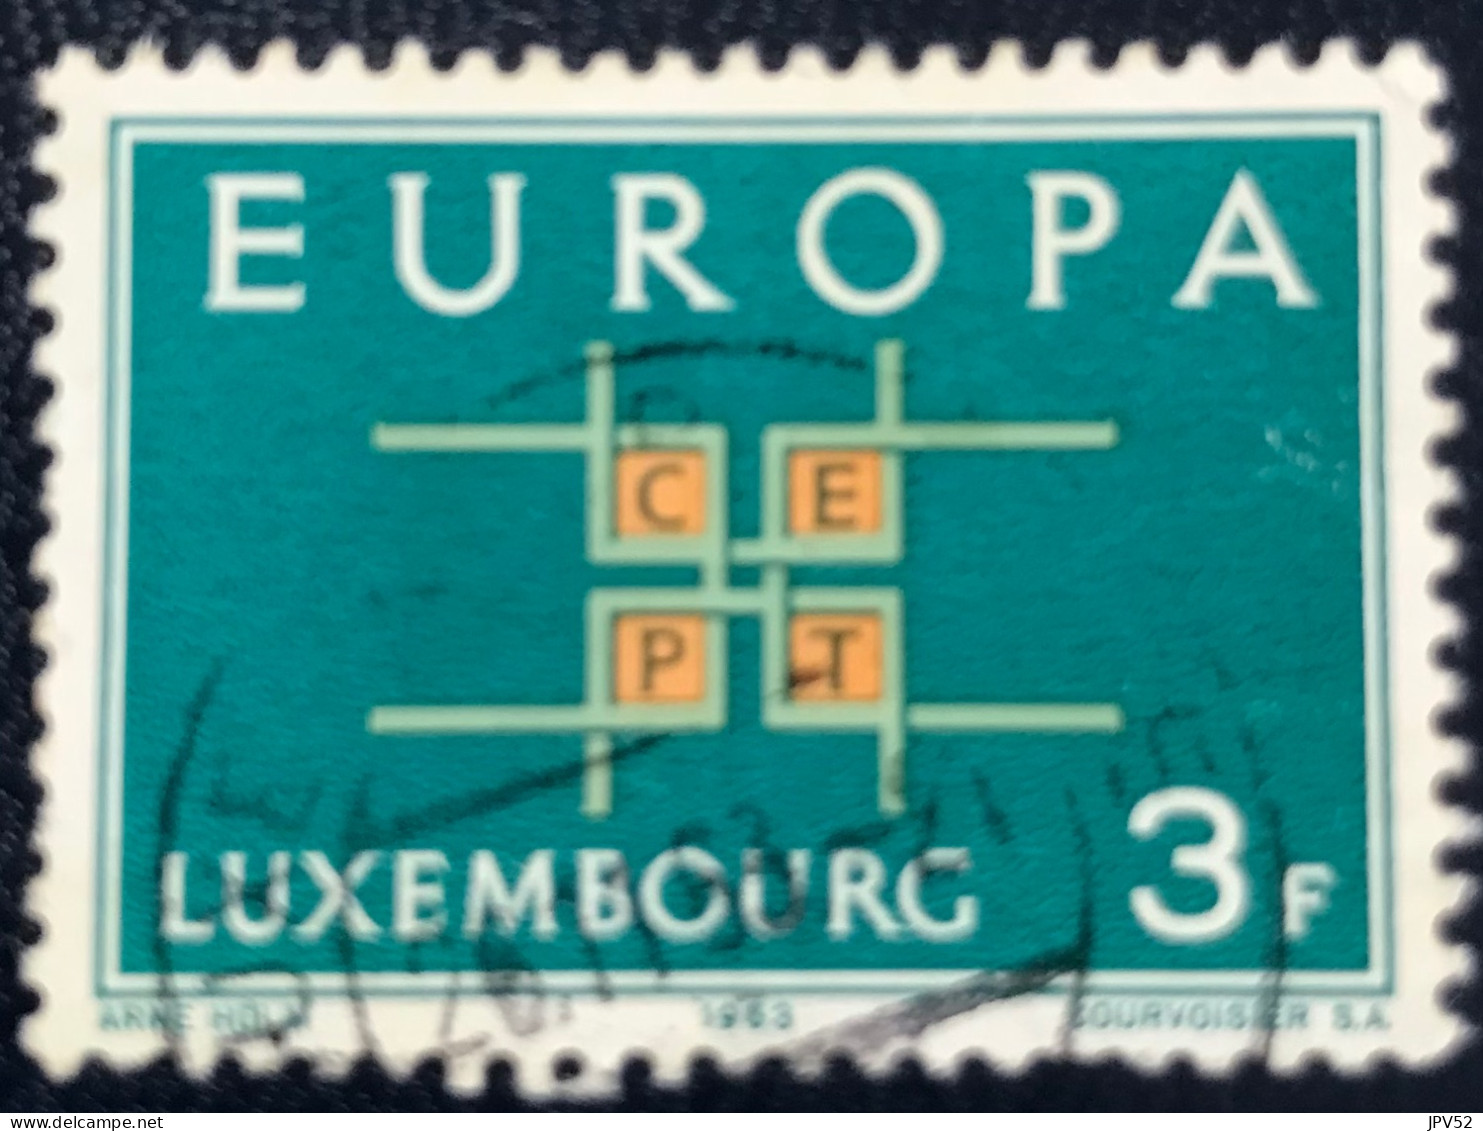 Luxembourg - Luxemburg - C18/31 - 1963 - (°)used - Michel 680 - Europa - CEPT - Gebruikt